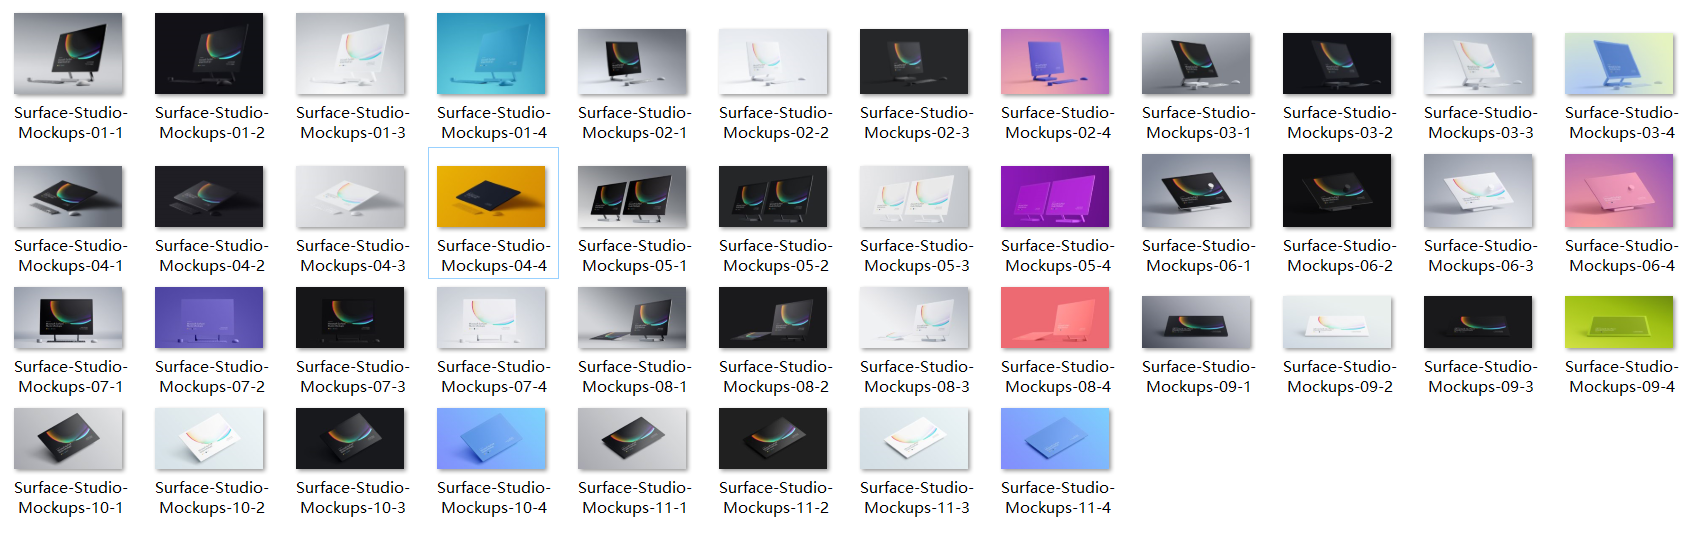 超级主流桌面&移动设备样机系列：微软一体机 Surface Studio 样机&场景 [兼容PS,Sketch;共3.83GB]插图(12)